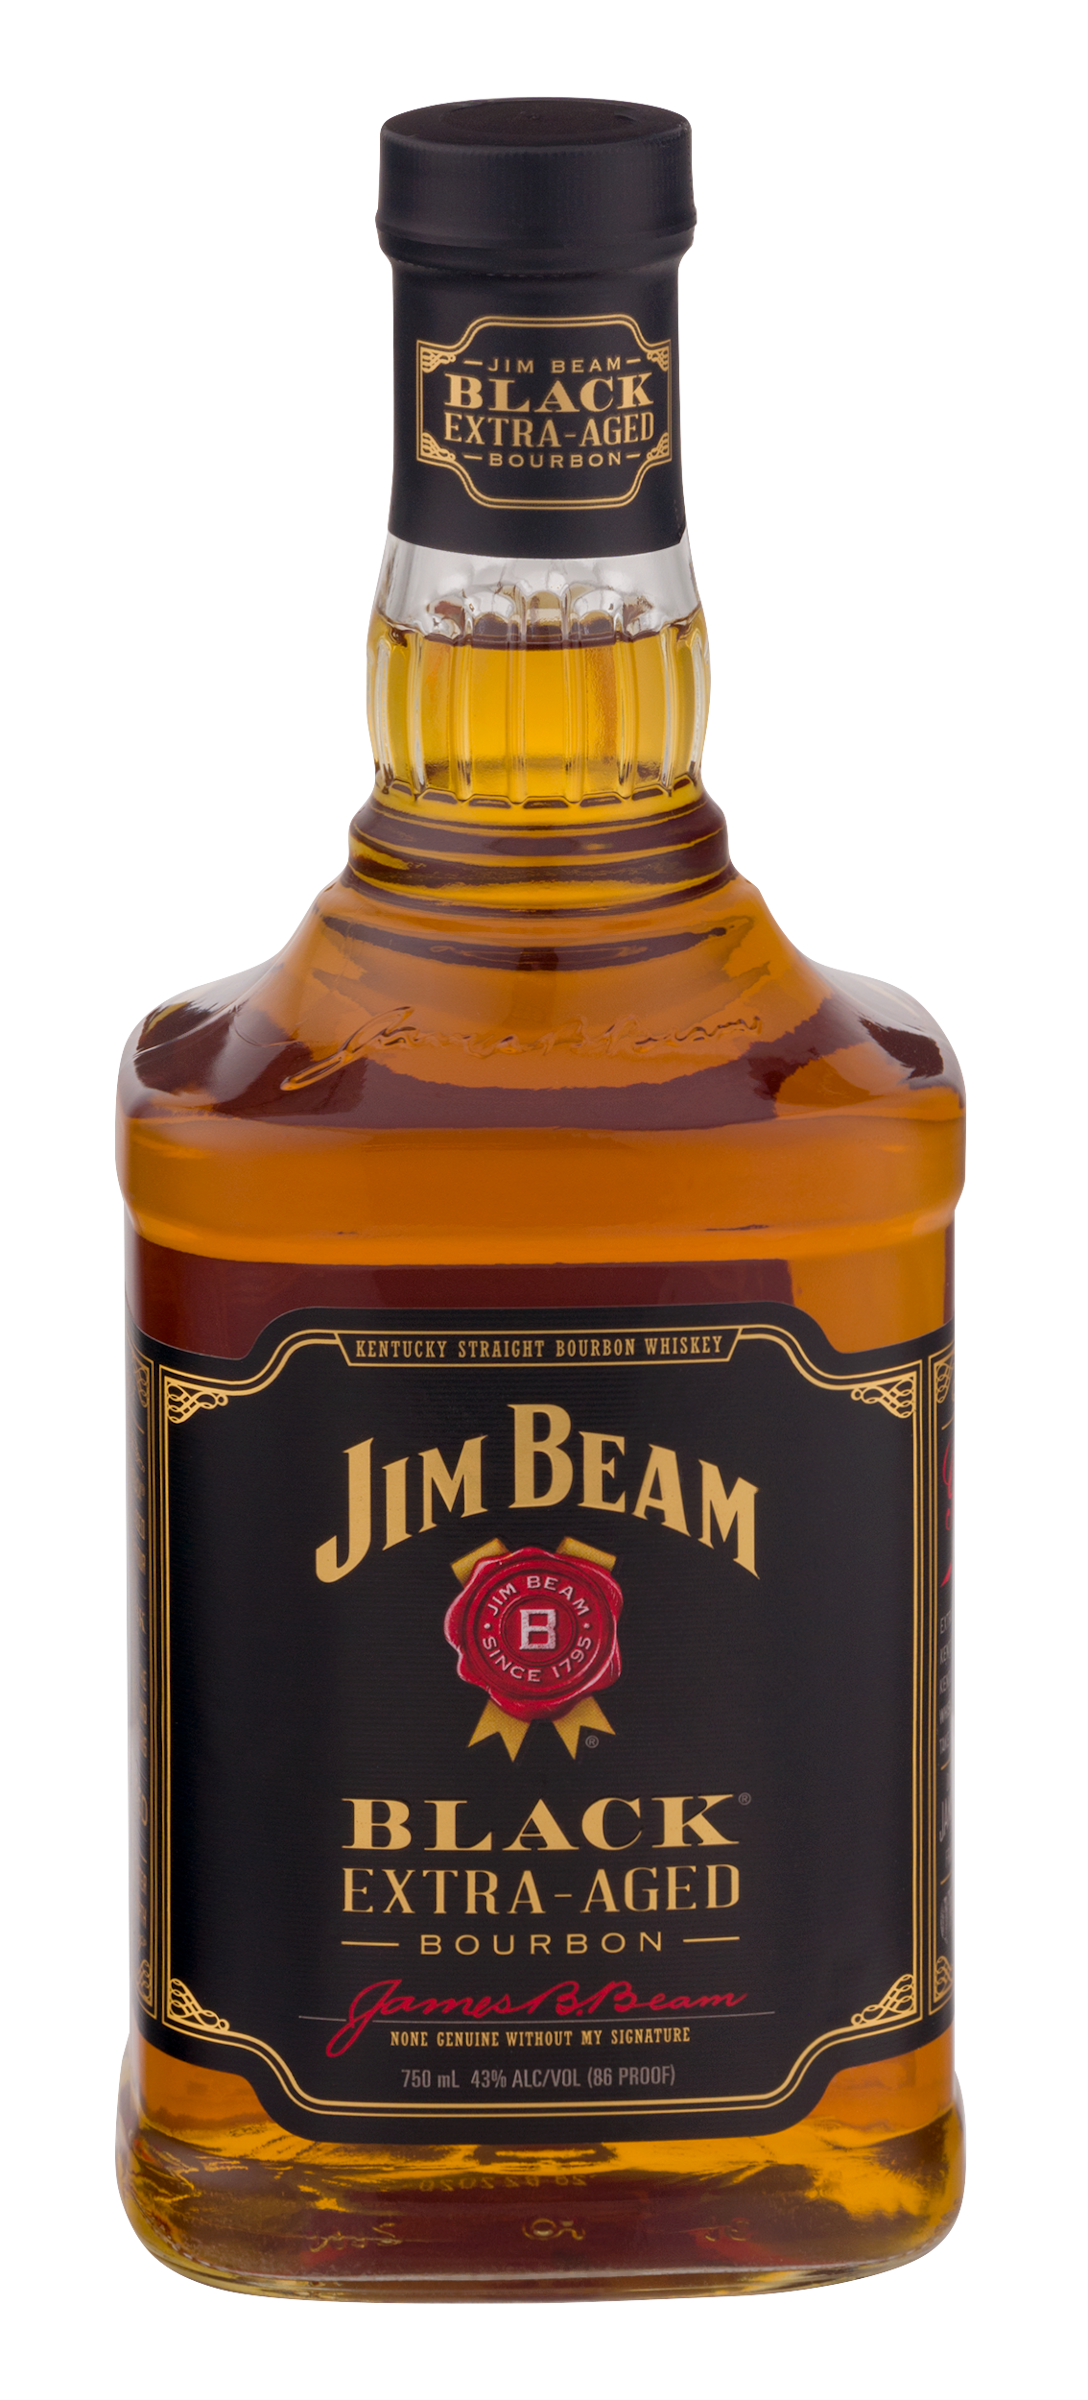 Bottle of JIM BEAM BLACK
